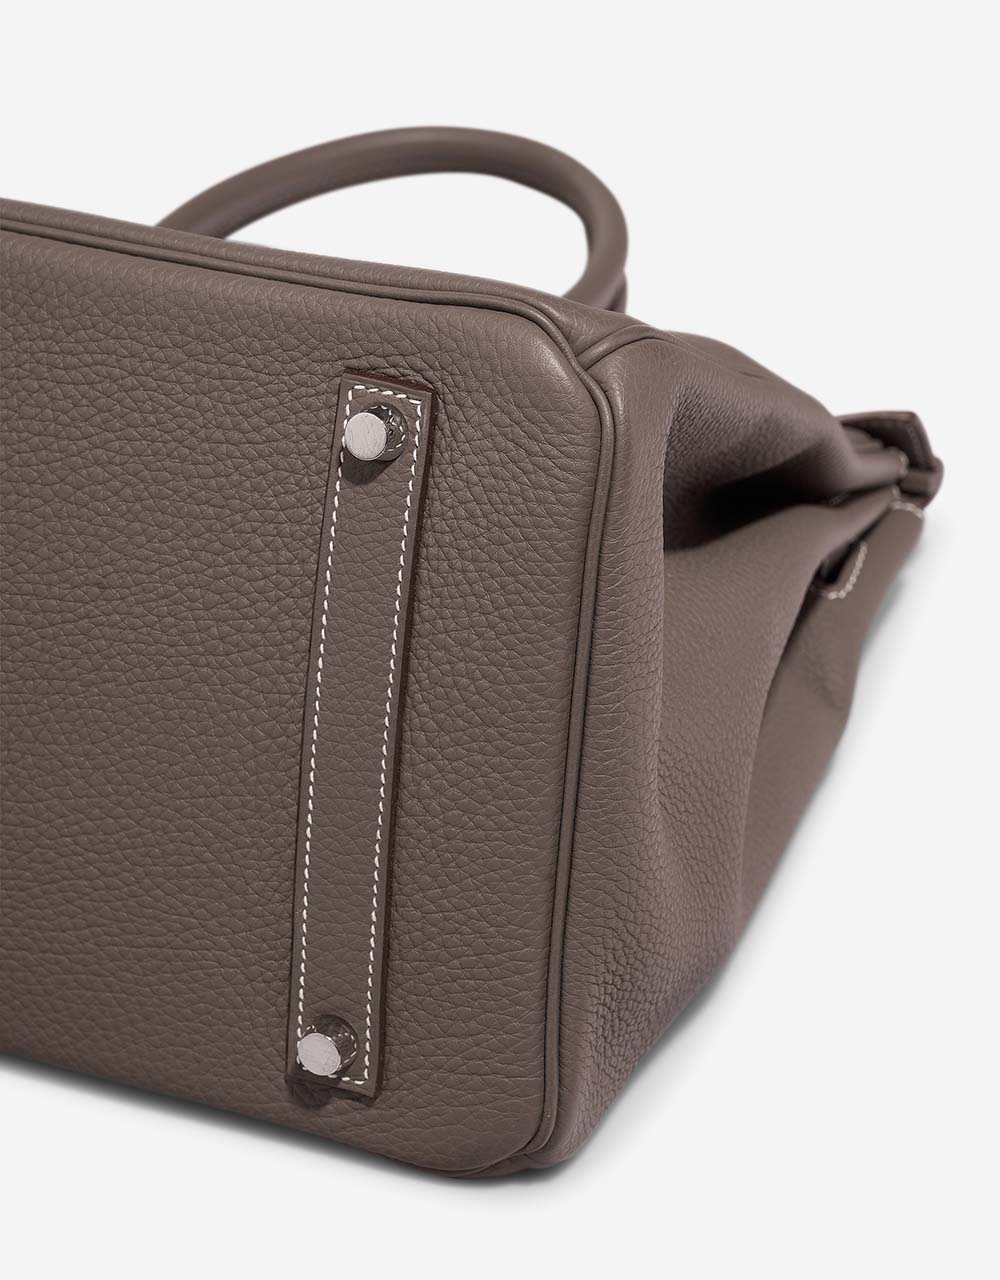 Hermès Birkin 35 Étoupe signes d'usure| Vendez votre sac de créateur sur Saclab.com